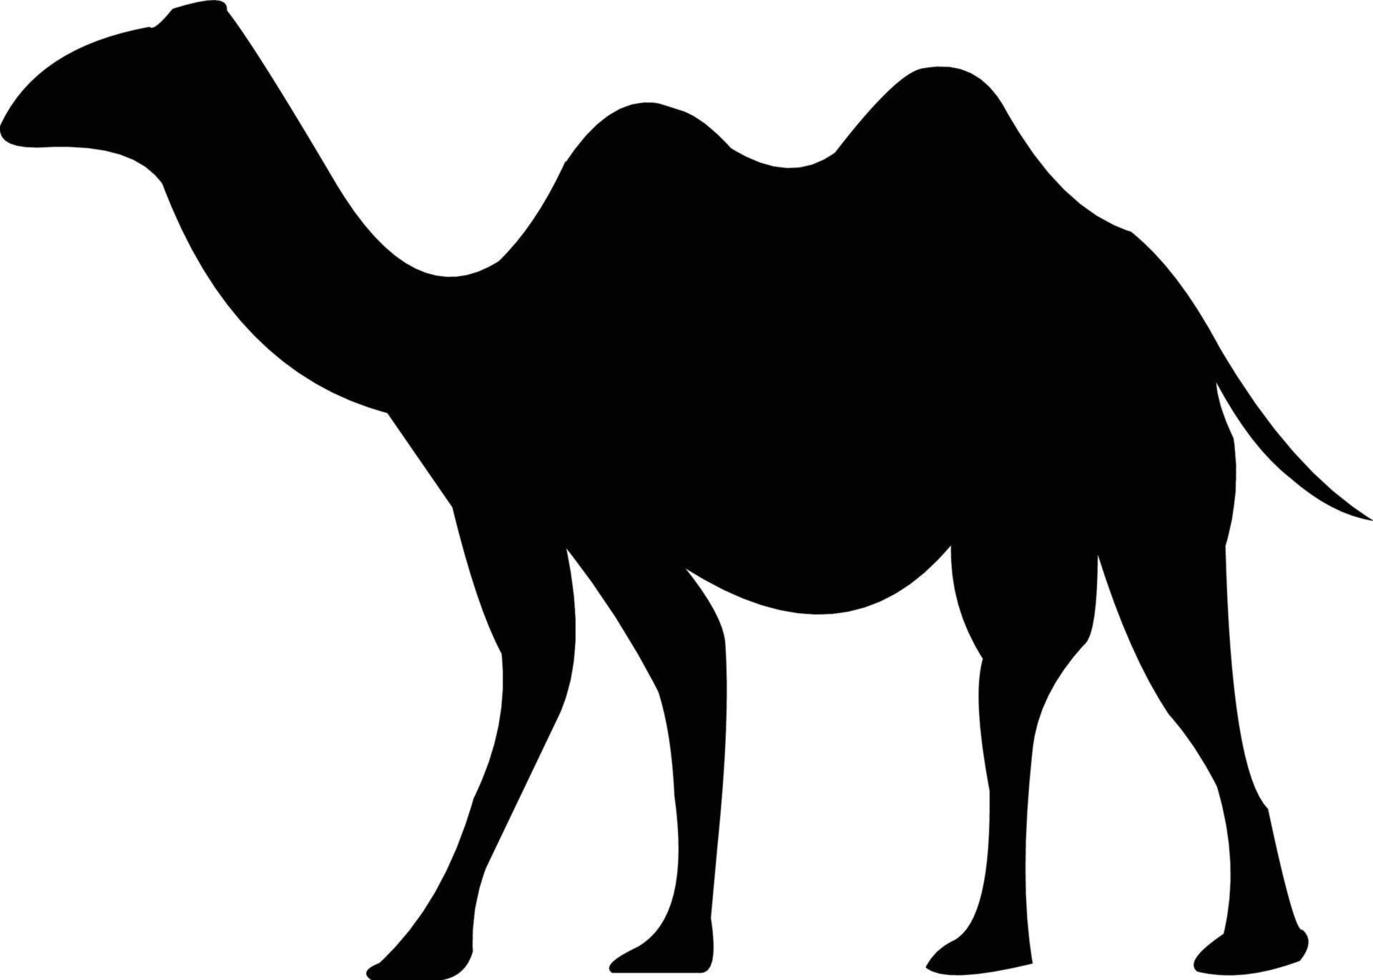 Schwarz-Weiß-Kamel-Vektorbilder, die Sie nach Bedarf verwenden können vektor